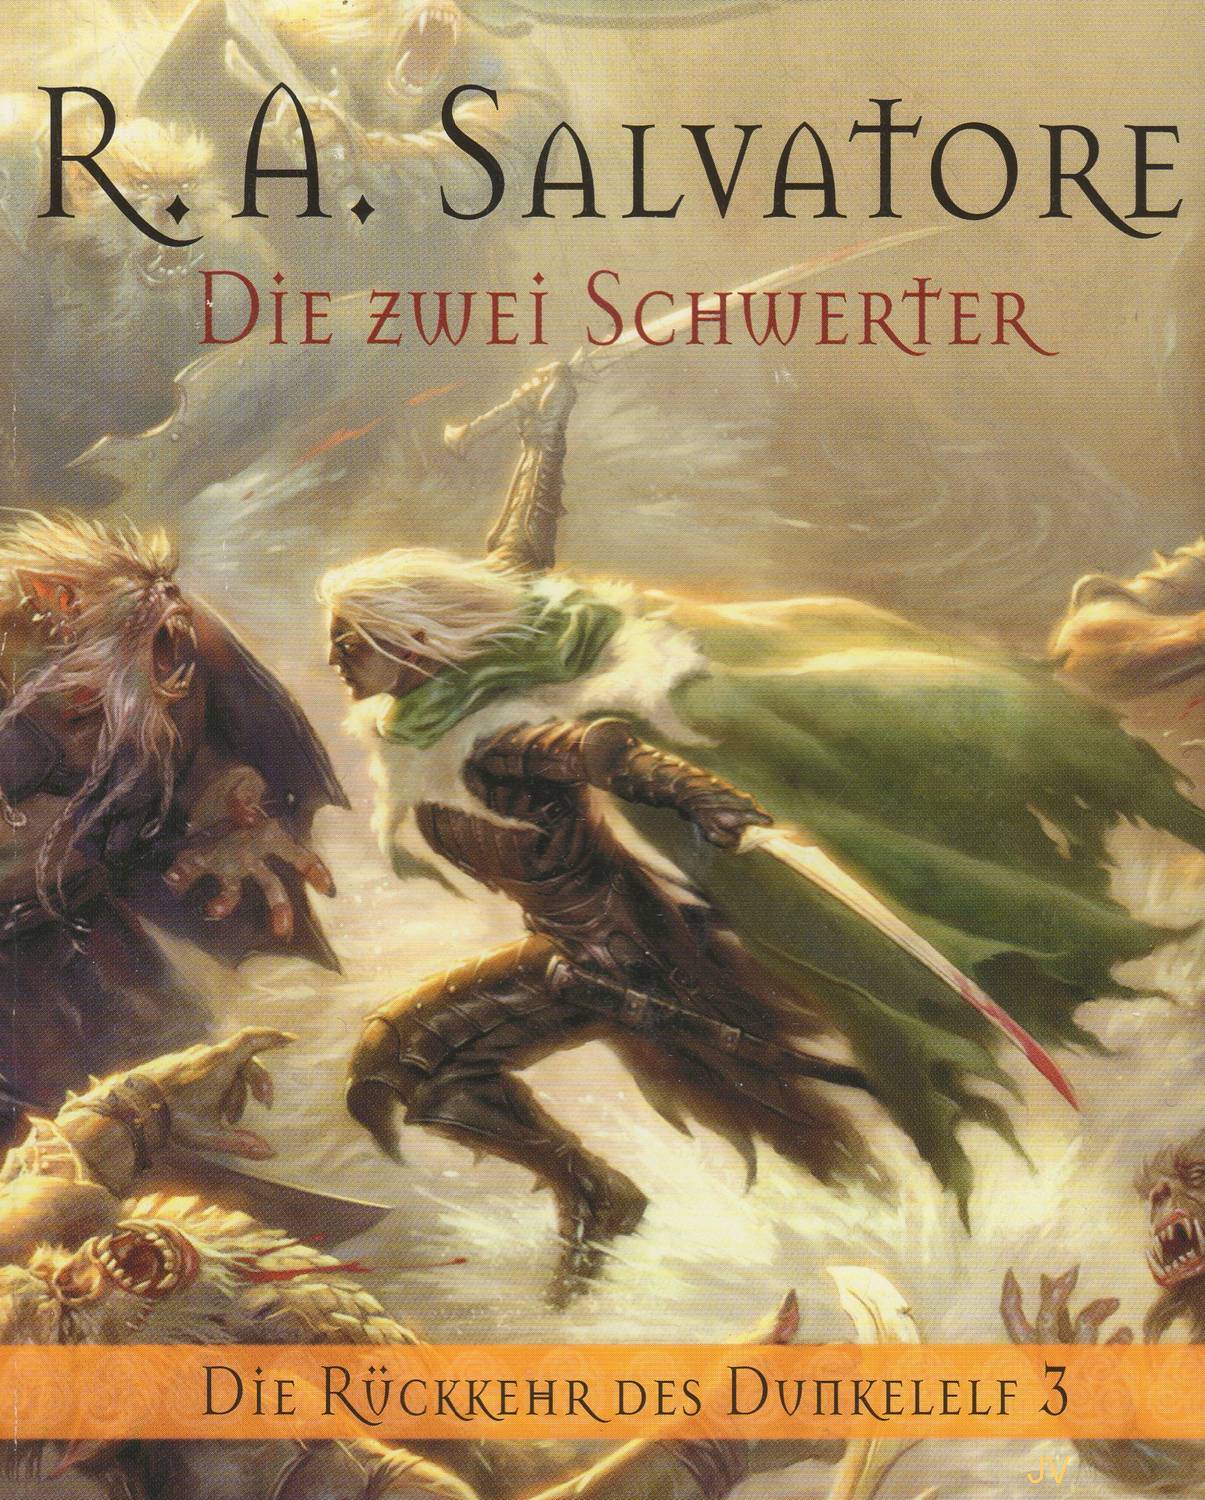 Cover zum Buch Die zwei Schwerter von R.A.Salvatore, zweiter Teil der Rckkehr des Dunkelelf Saga